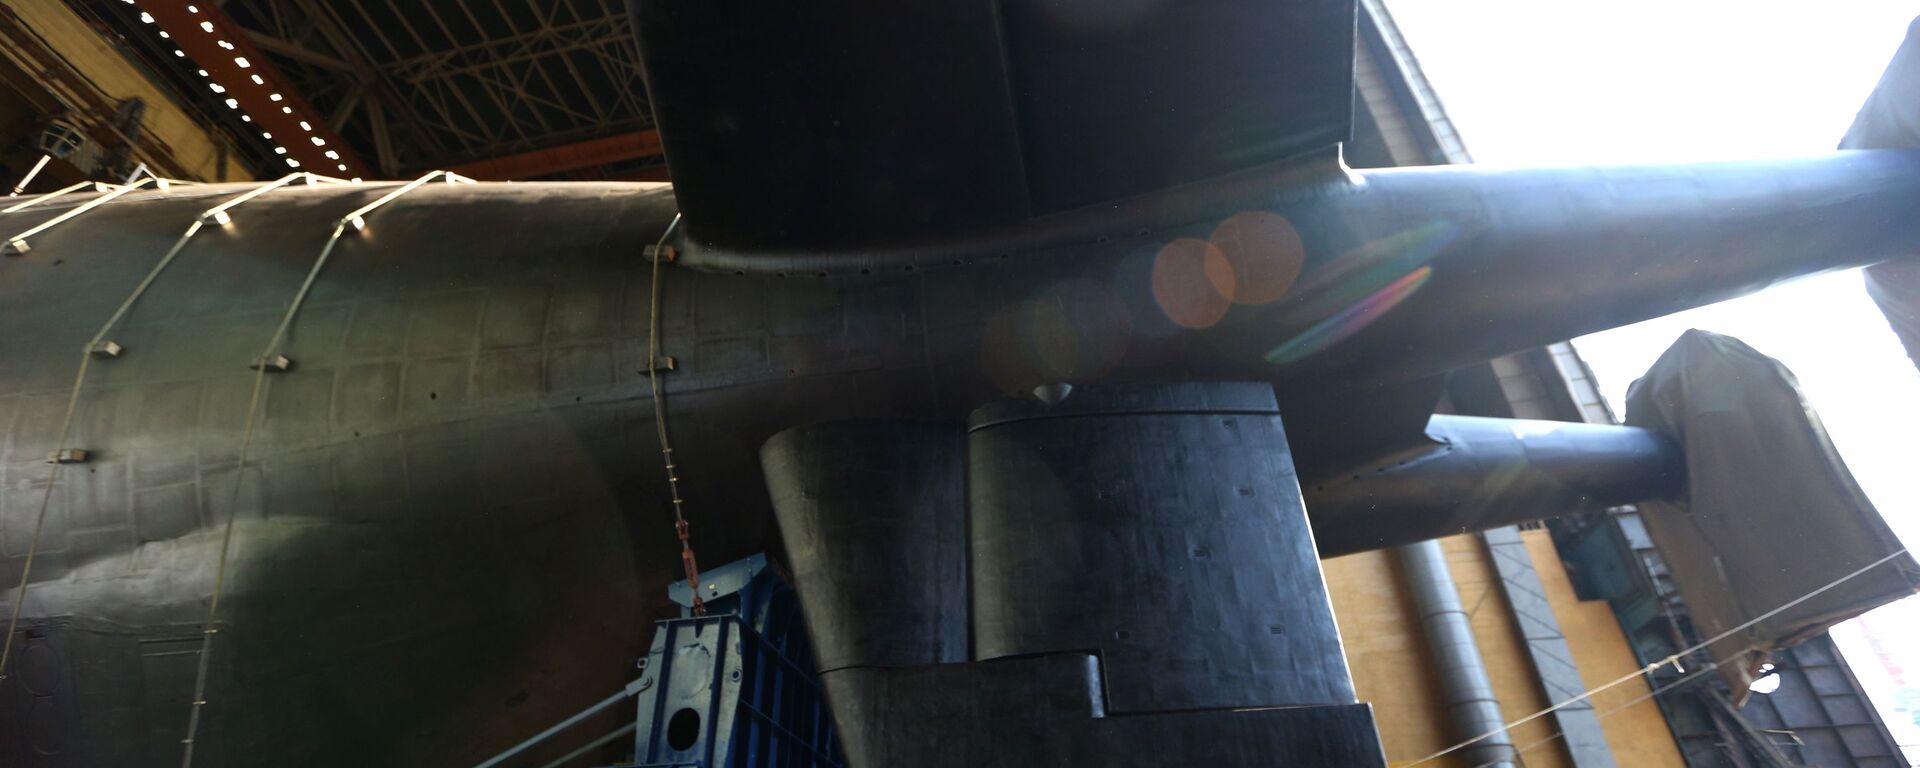 Спуск на воду атомной подводной лодки Белгород в Архангельской области  - Sputnik Latvija, 1920, 26.12.2019